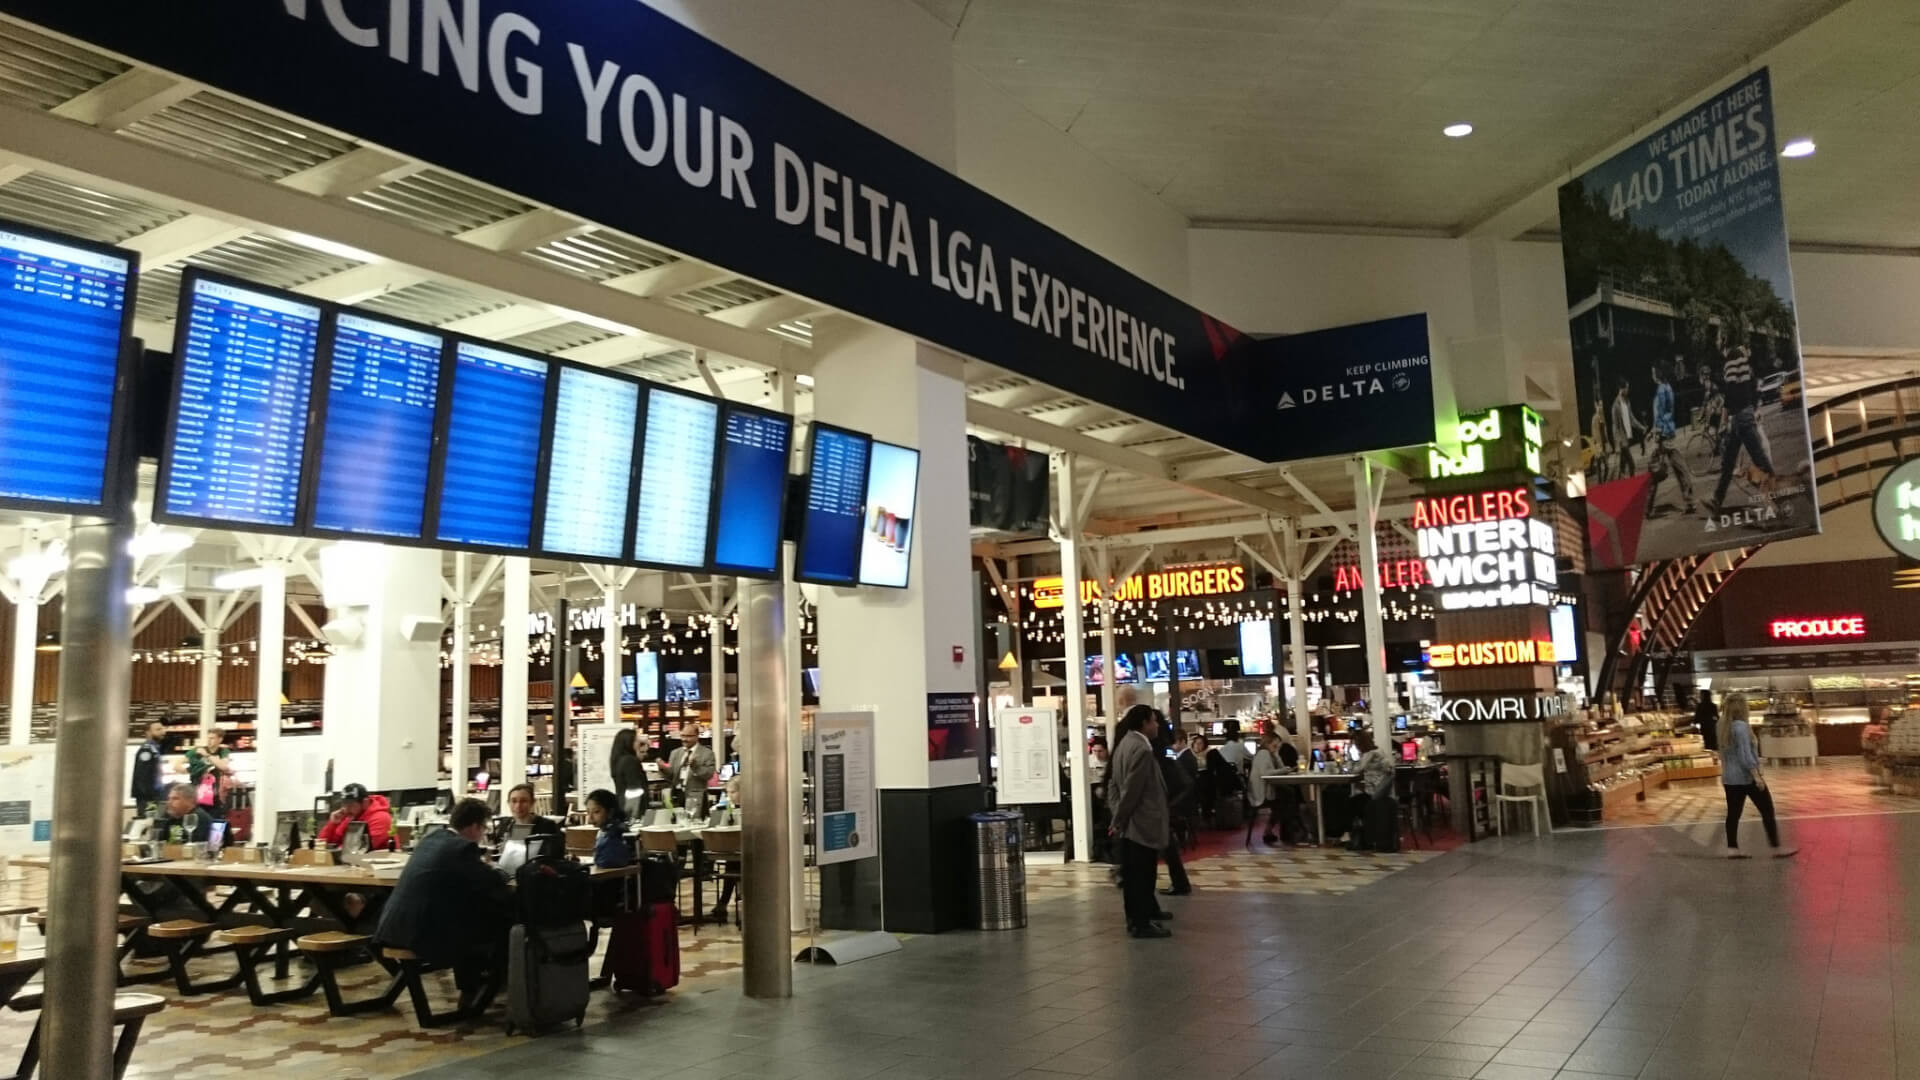 Aeroporto New York: Como chegar e sair dos aeroportos de New York